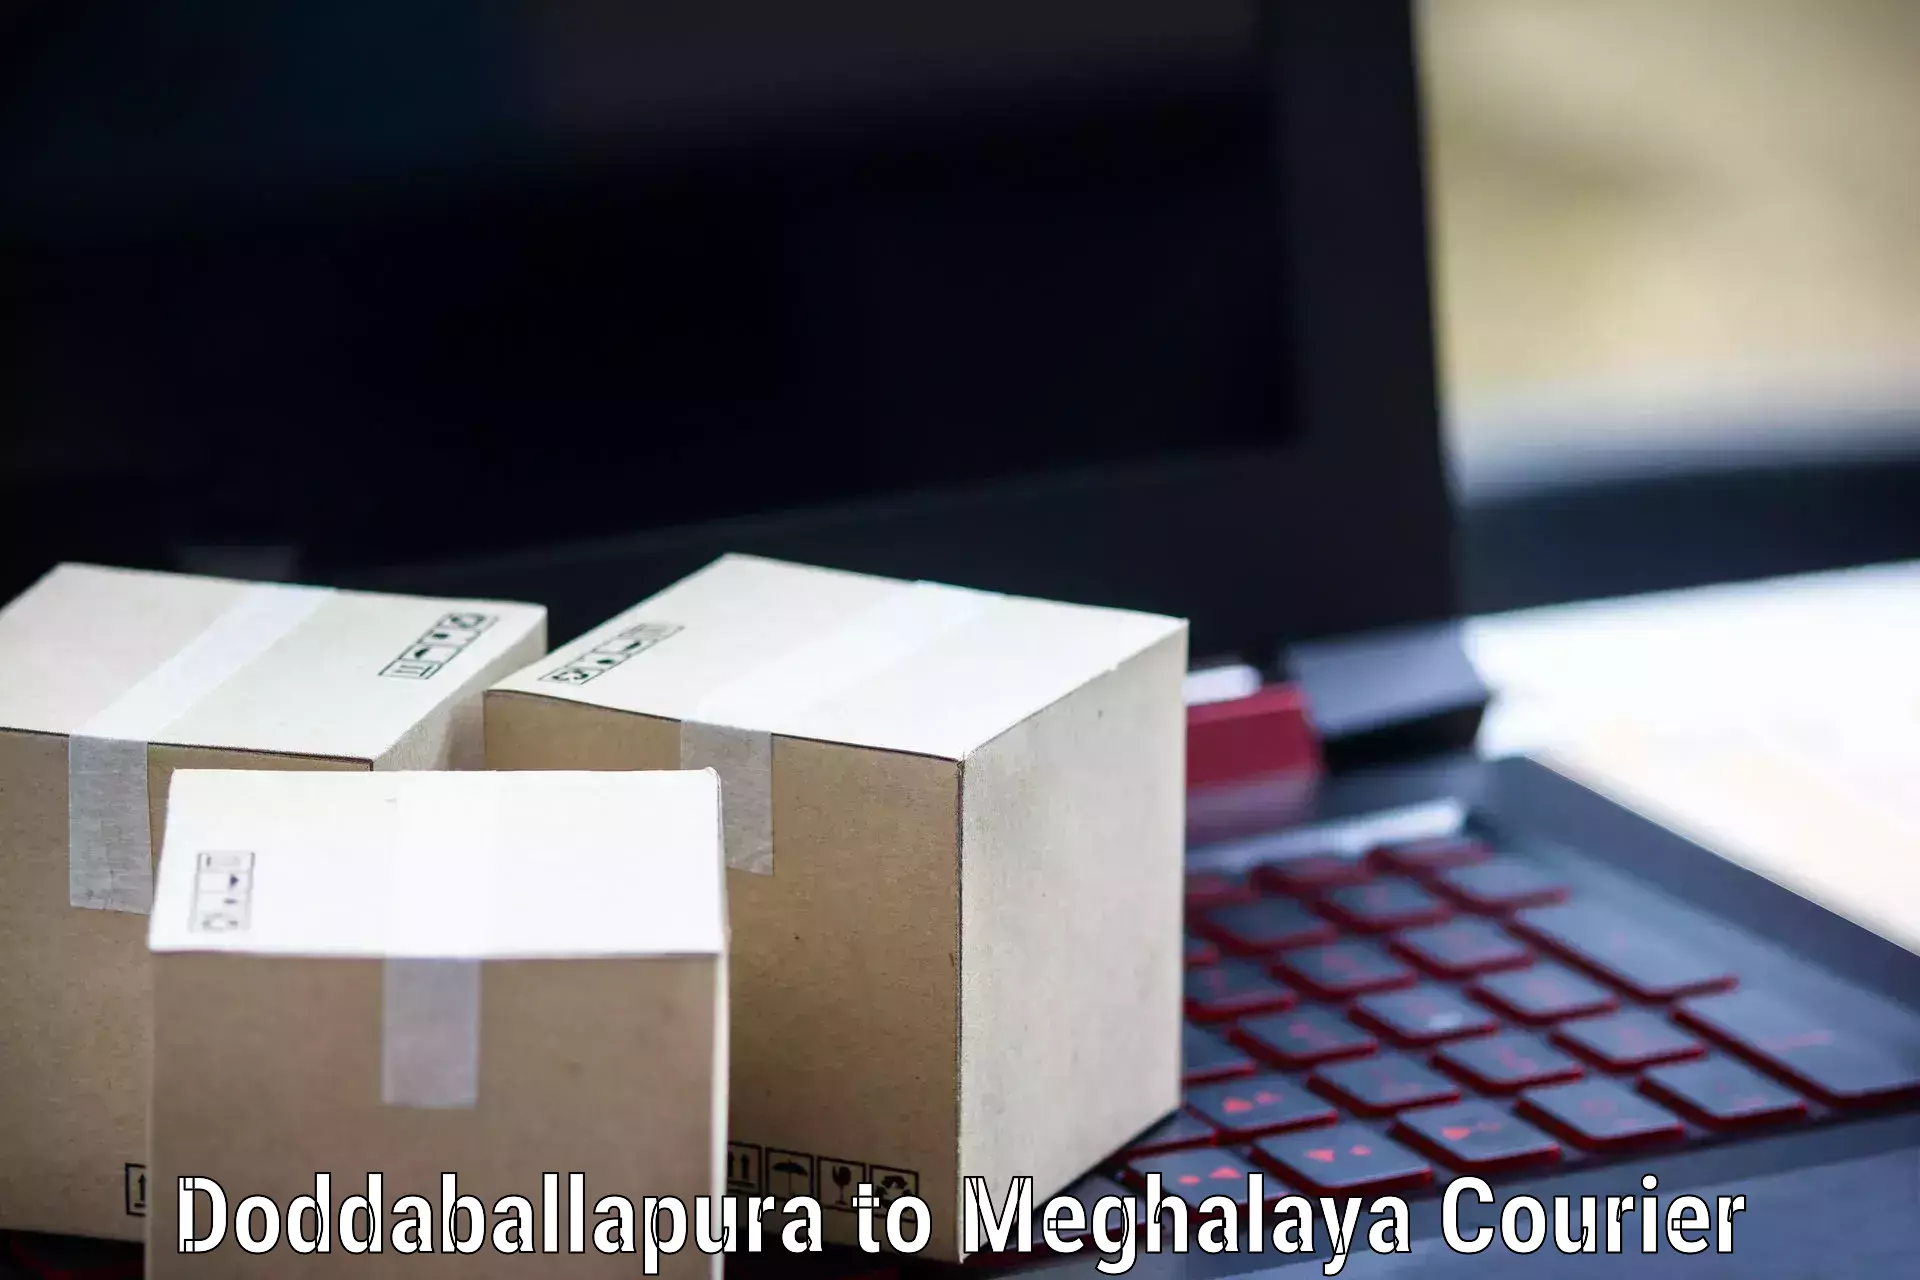 Large-scale shipping solutions Doddaballapura to NIT Meghalaya